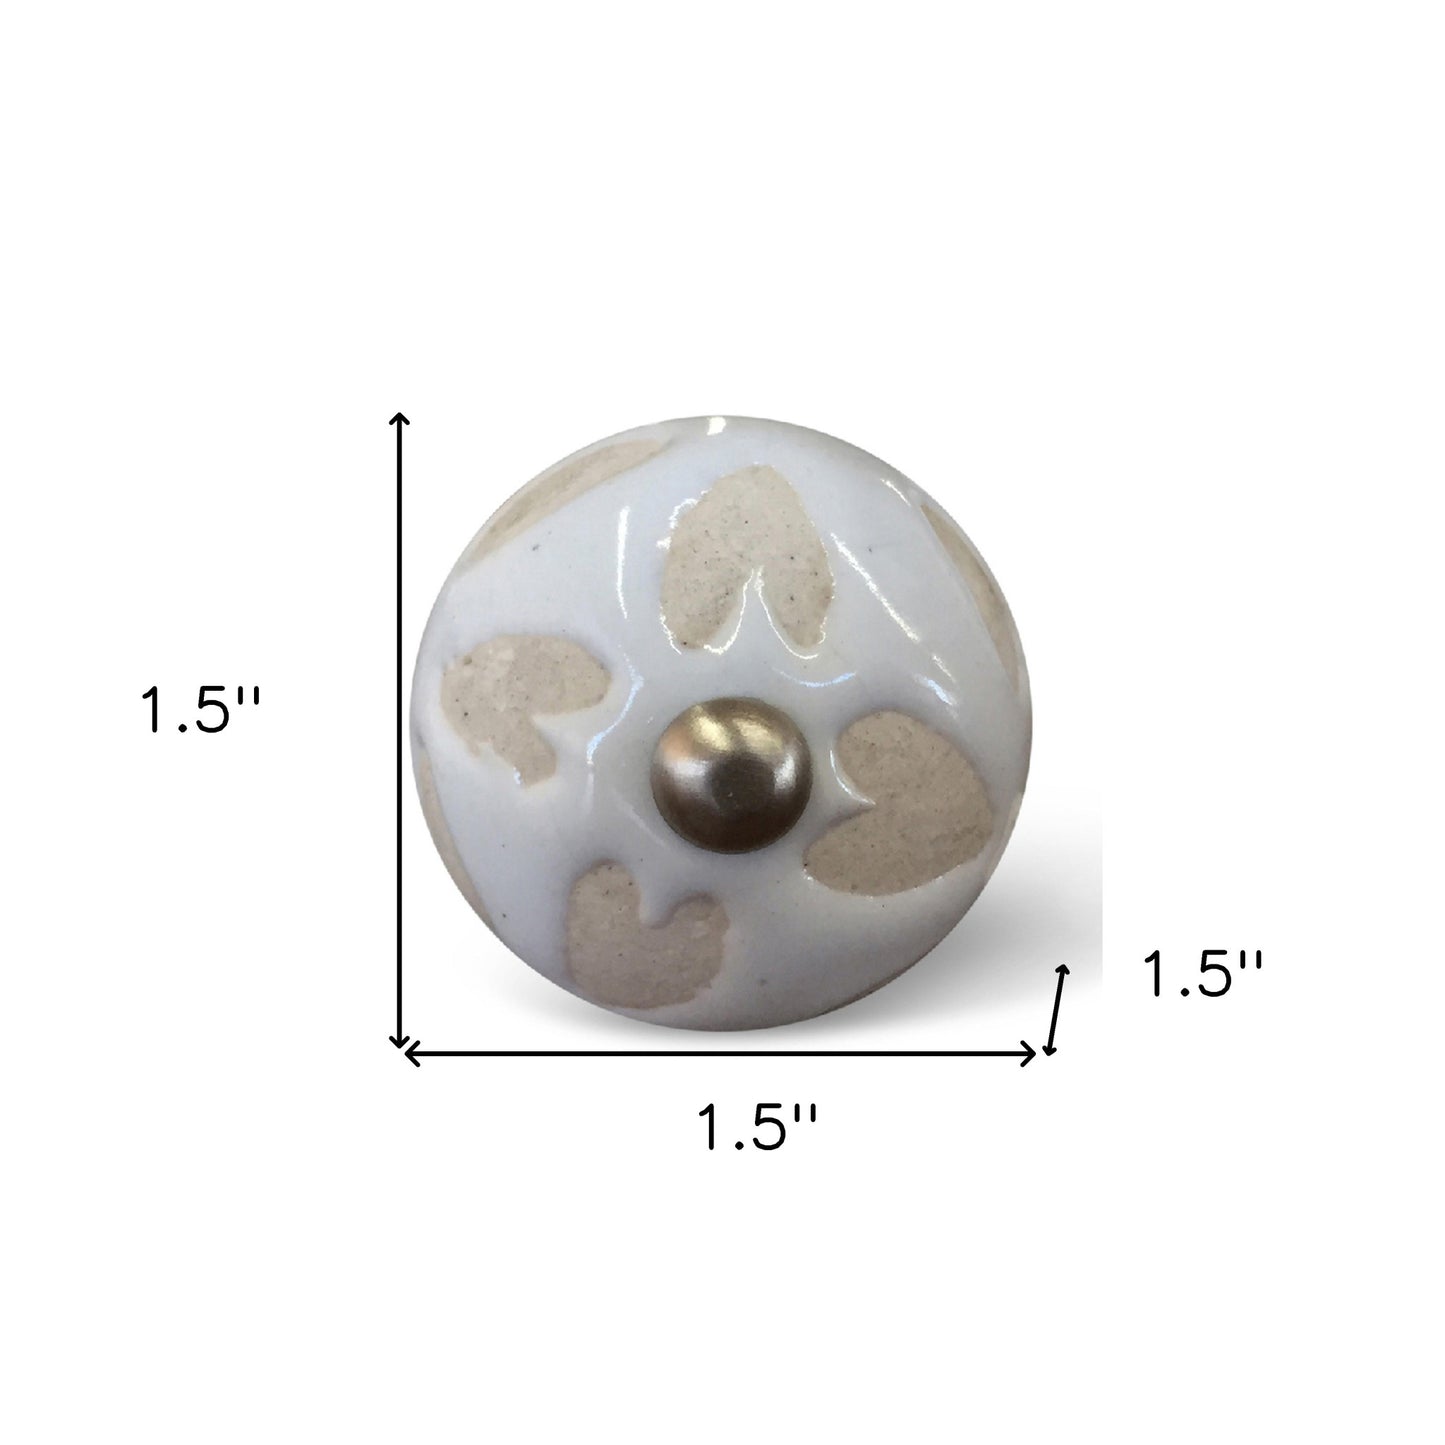 1.5" X 1.5" X 1.5" Ceramic Metal Multicolor 12 Pack Knob